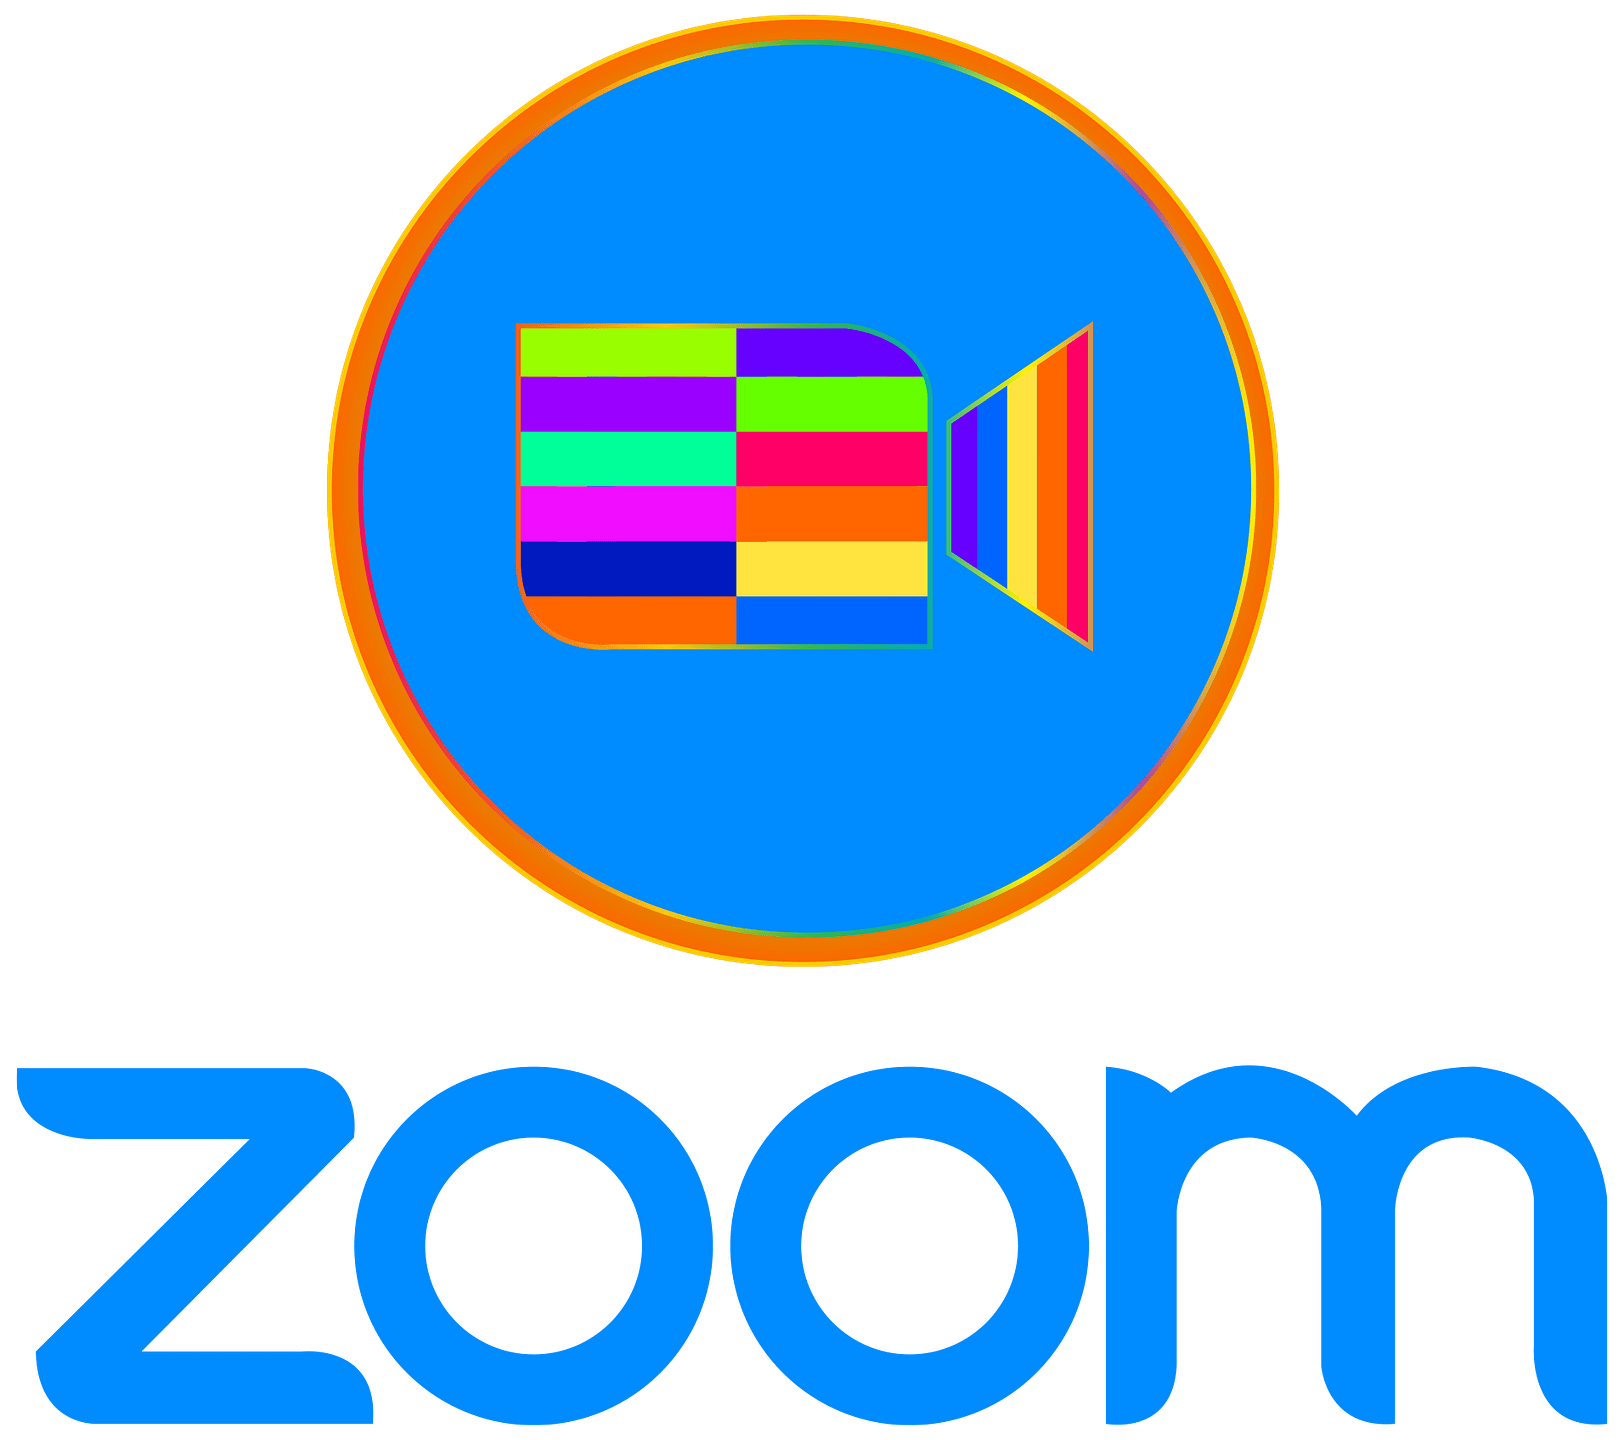 zoom icon